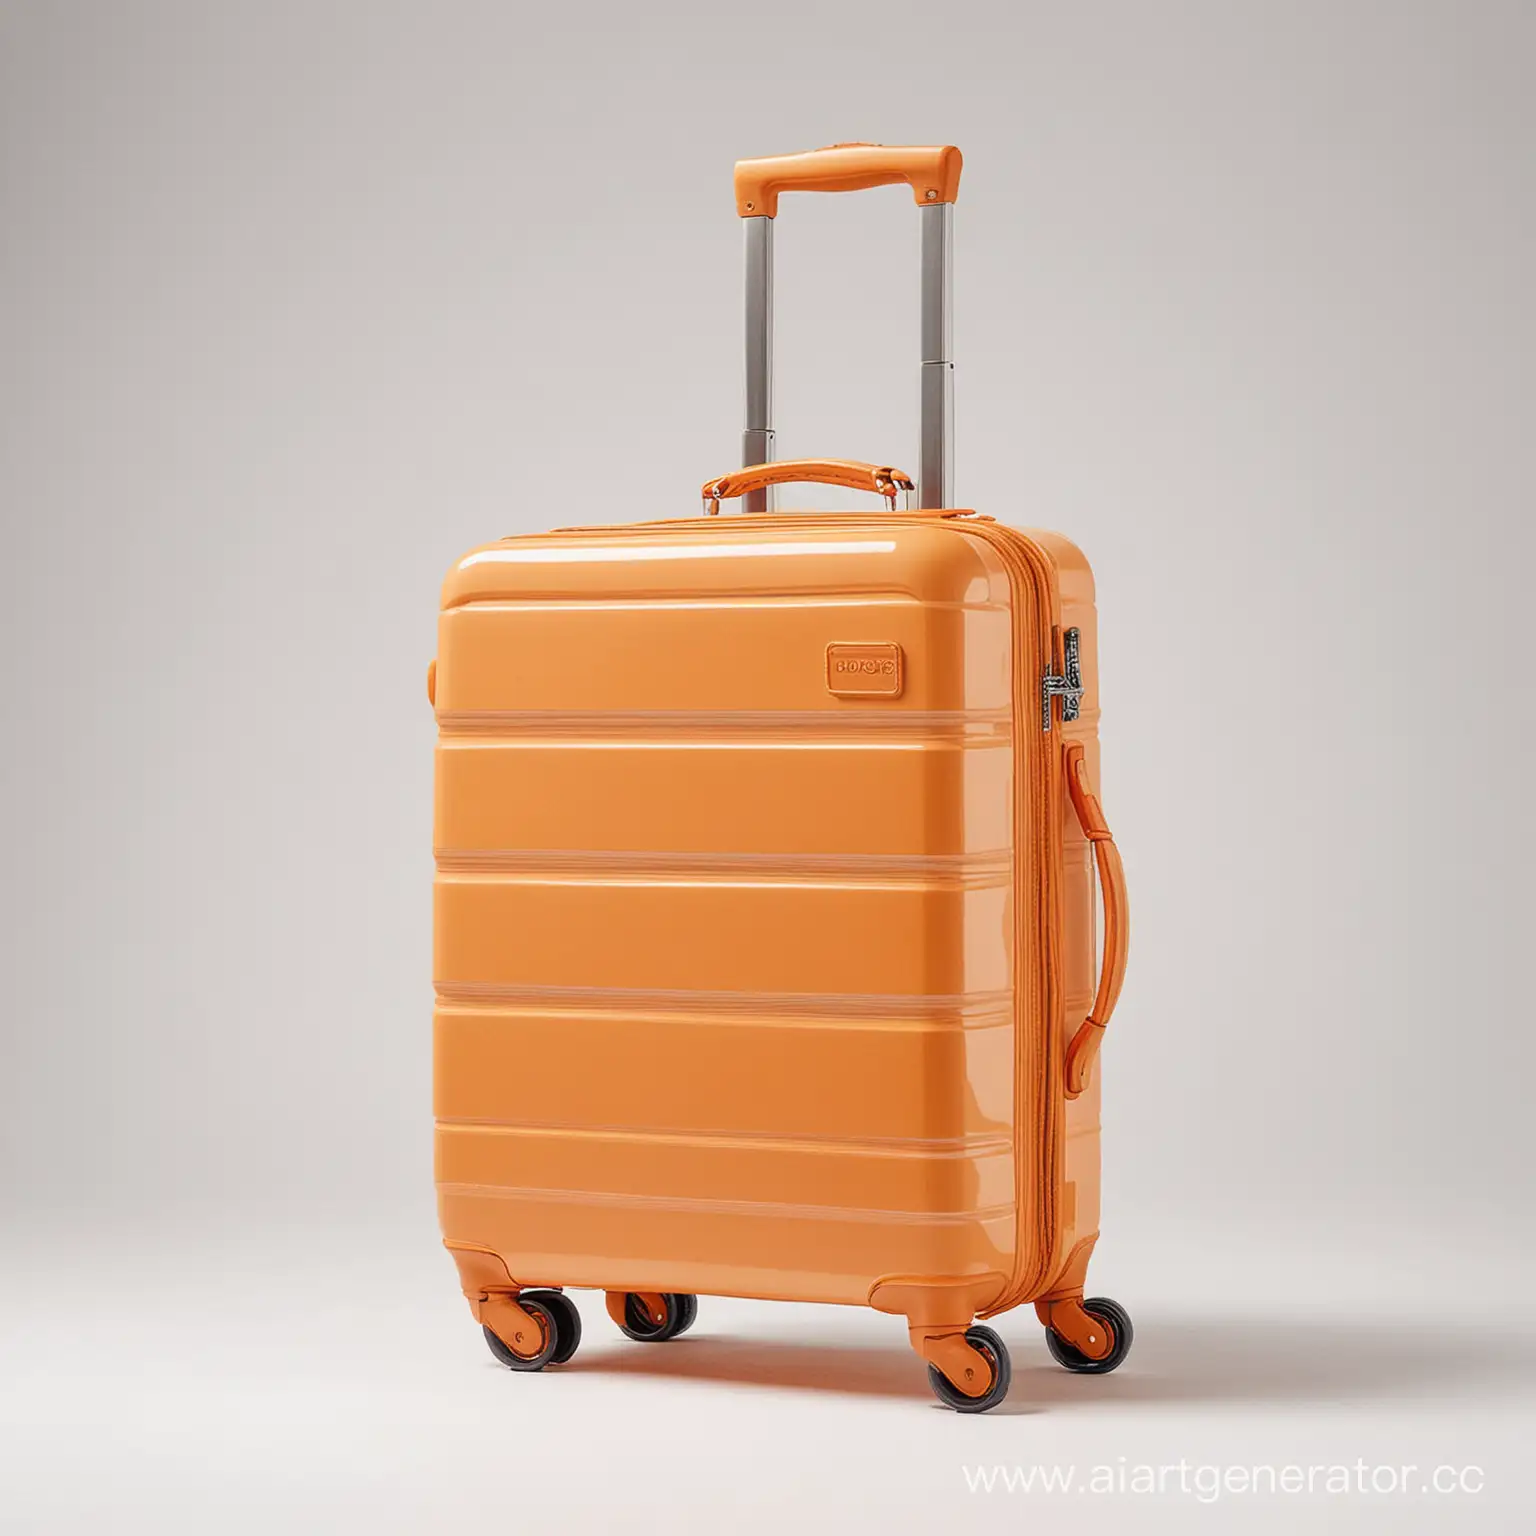 нарисуй мне оранжевый чемодан на колесиках на белом фоне

